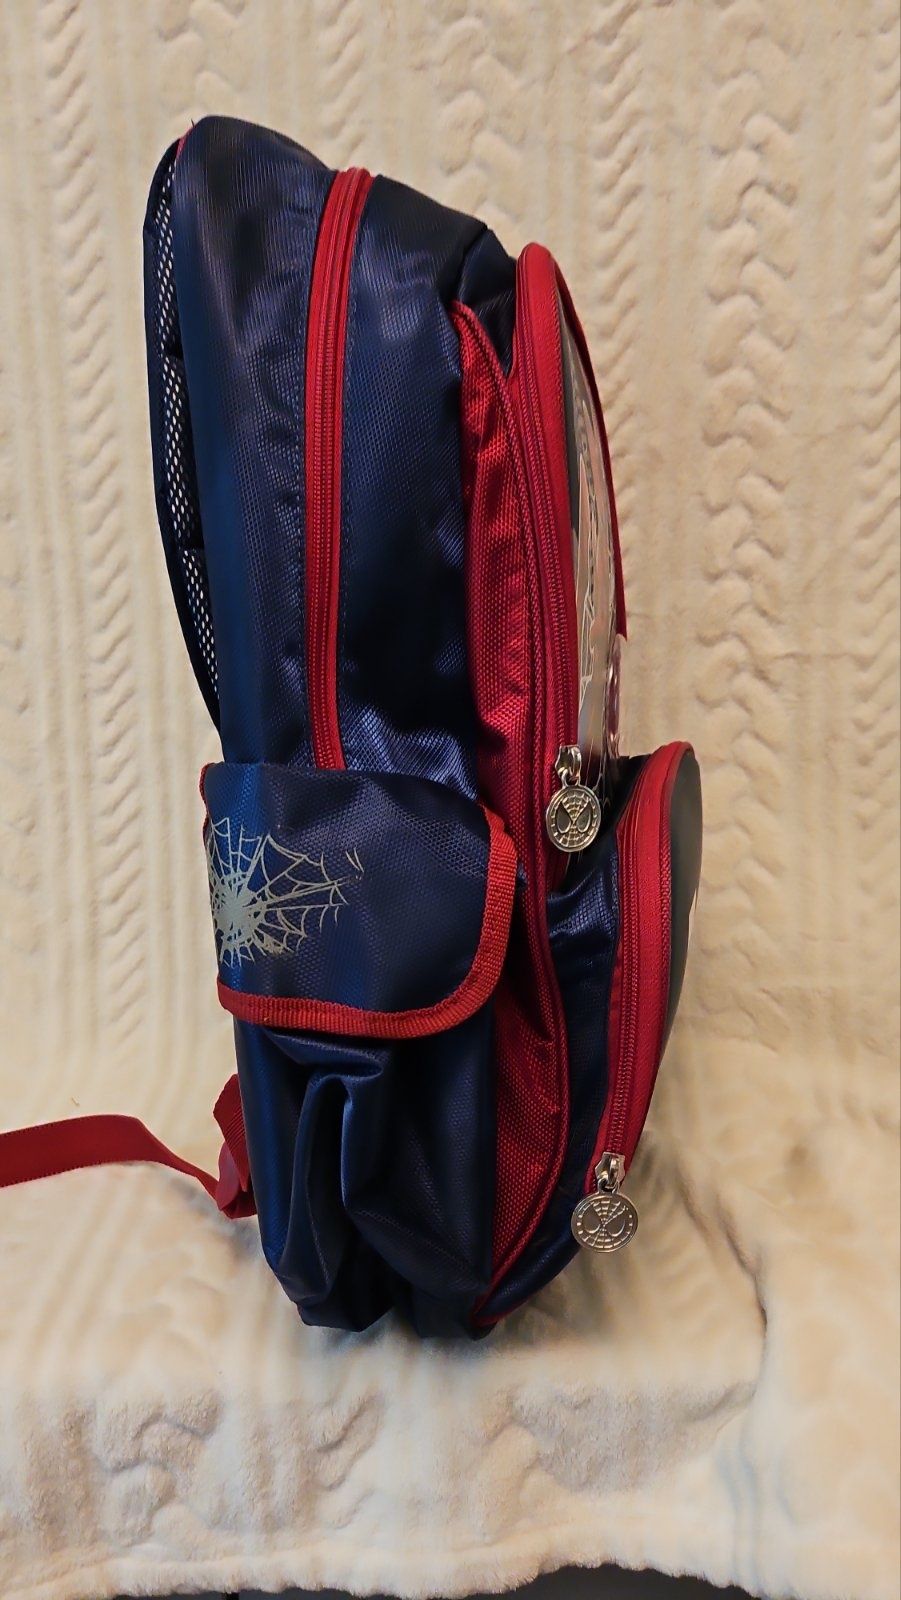 Рюкзак шкільний людина павук spiderman marvel школьный портфель марвел